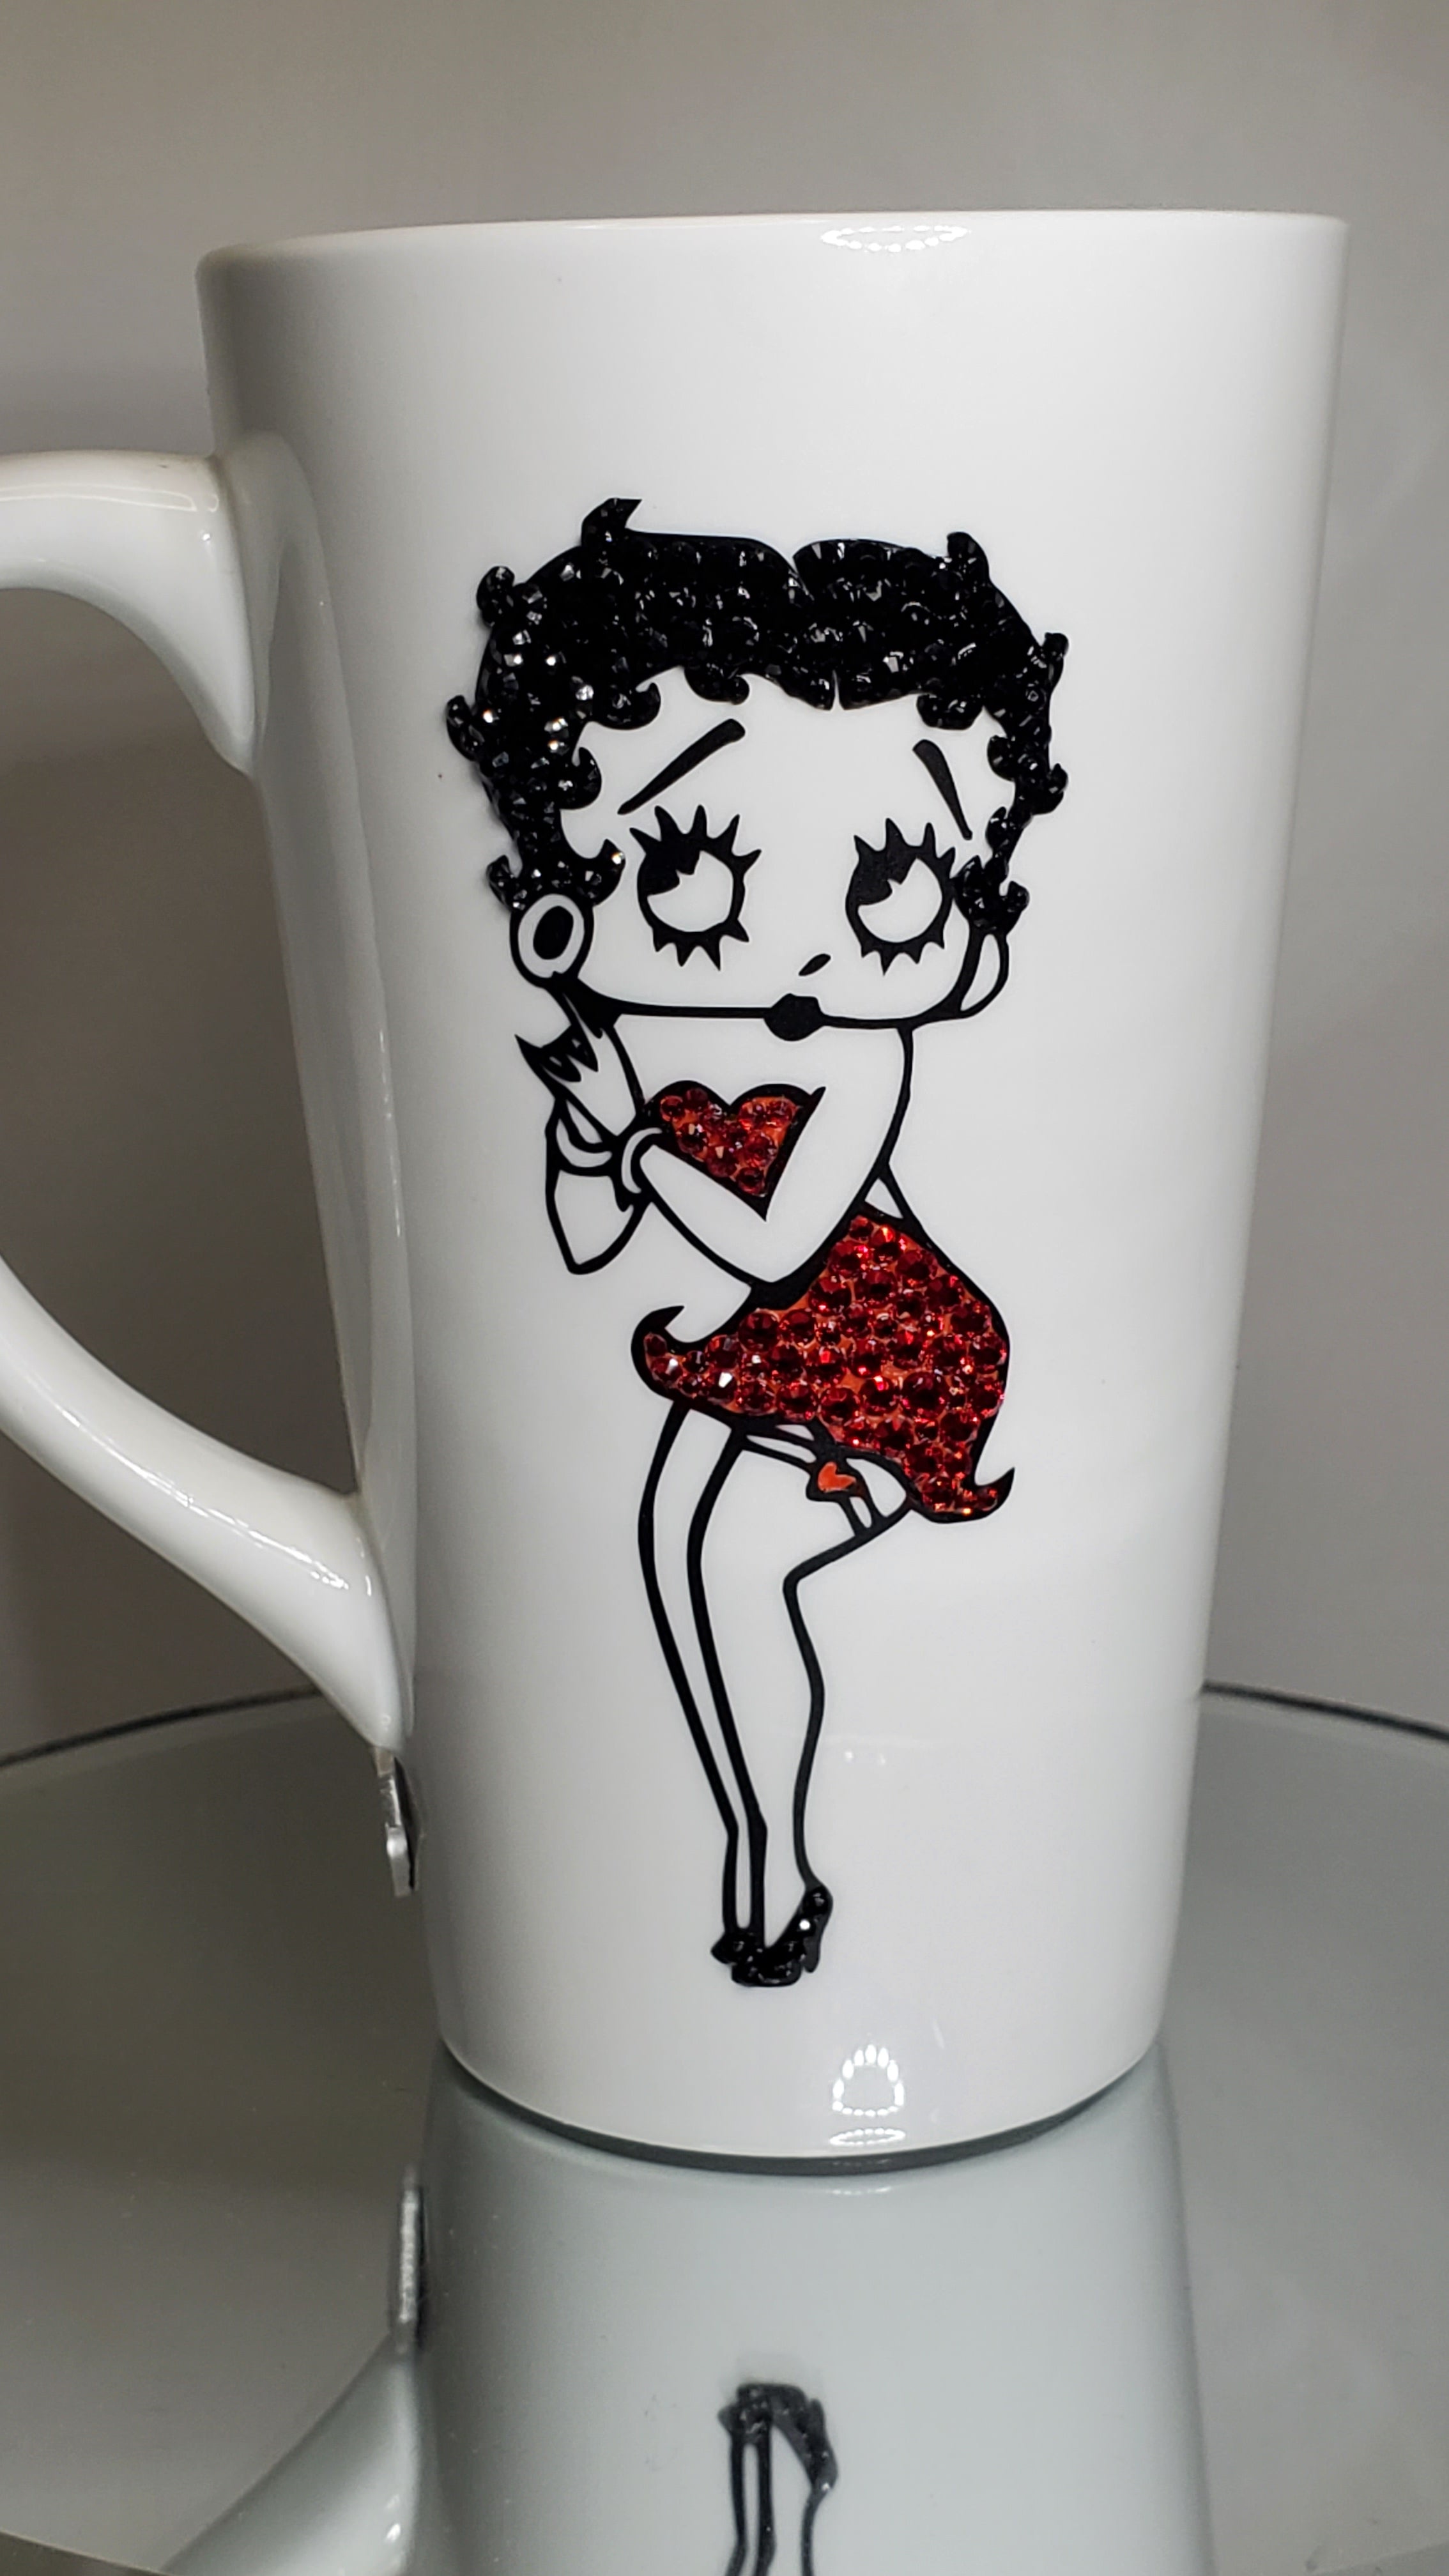 Betty Boop - Boop-Oop-A-Doop 16 oz. Plastic Travel Mug